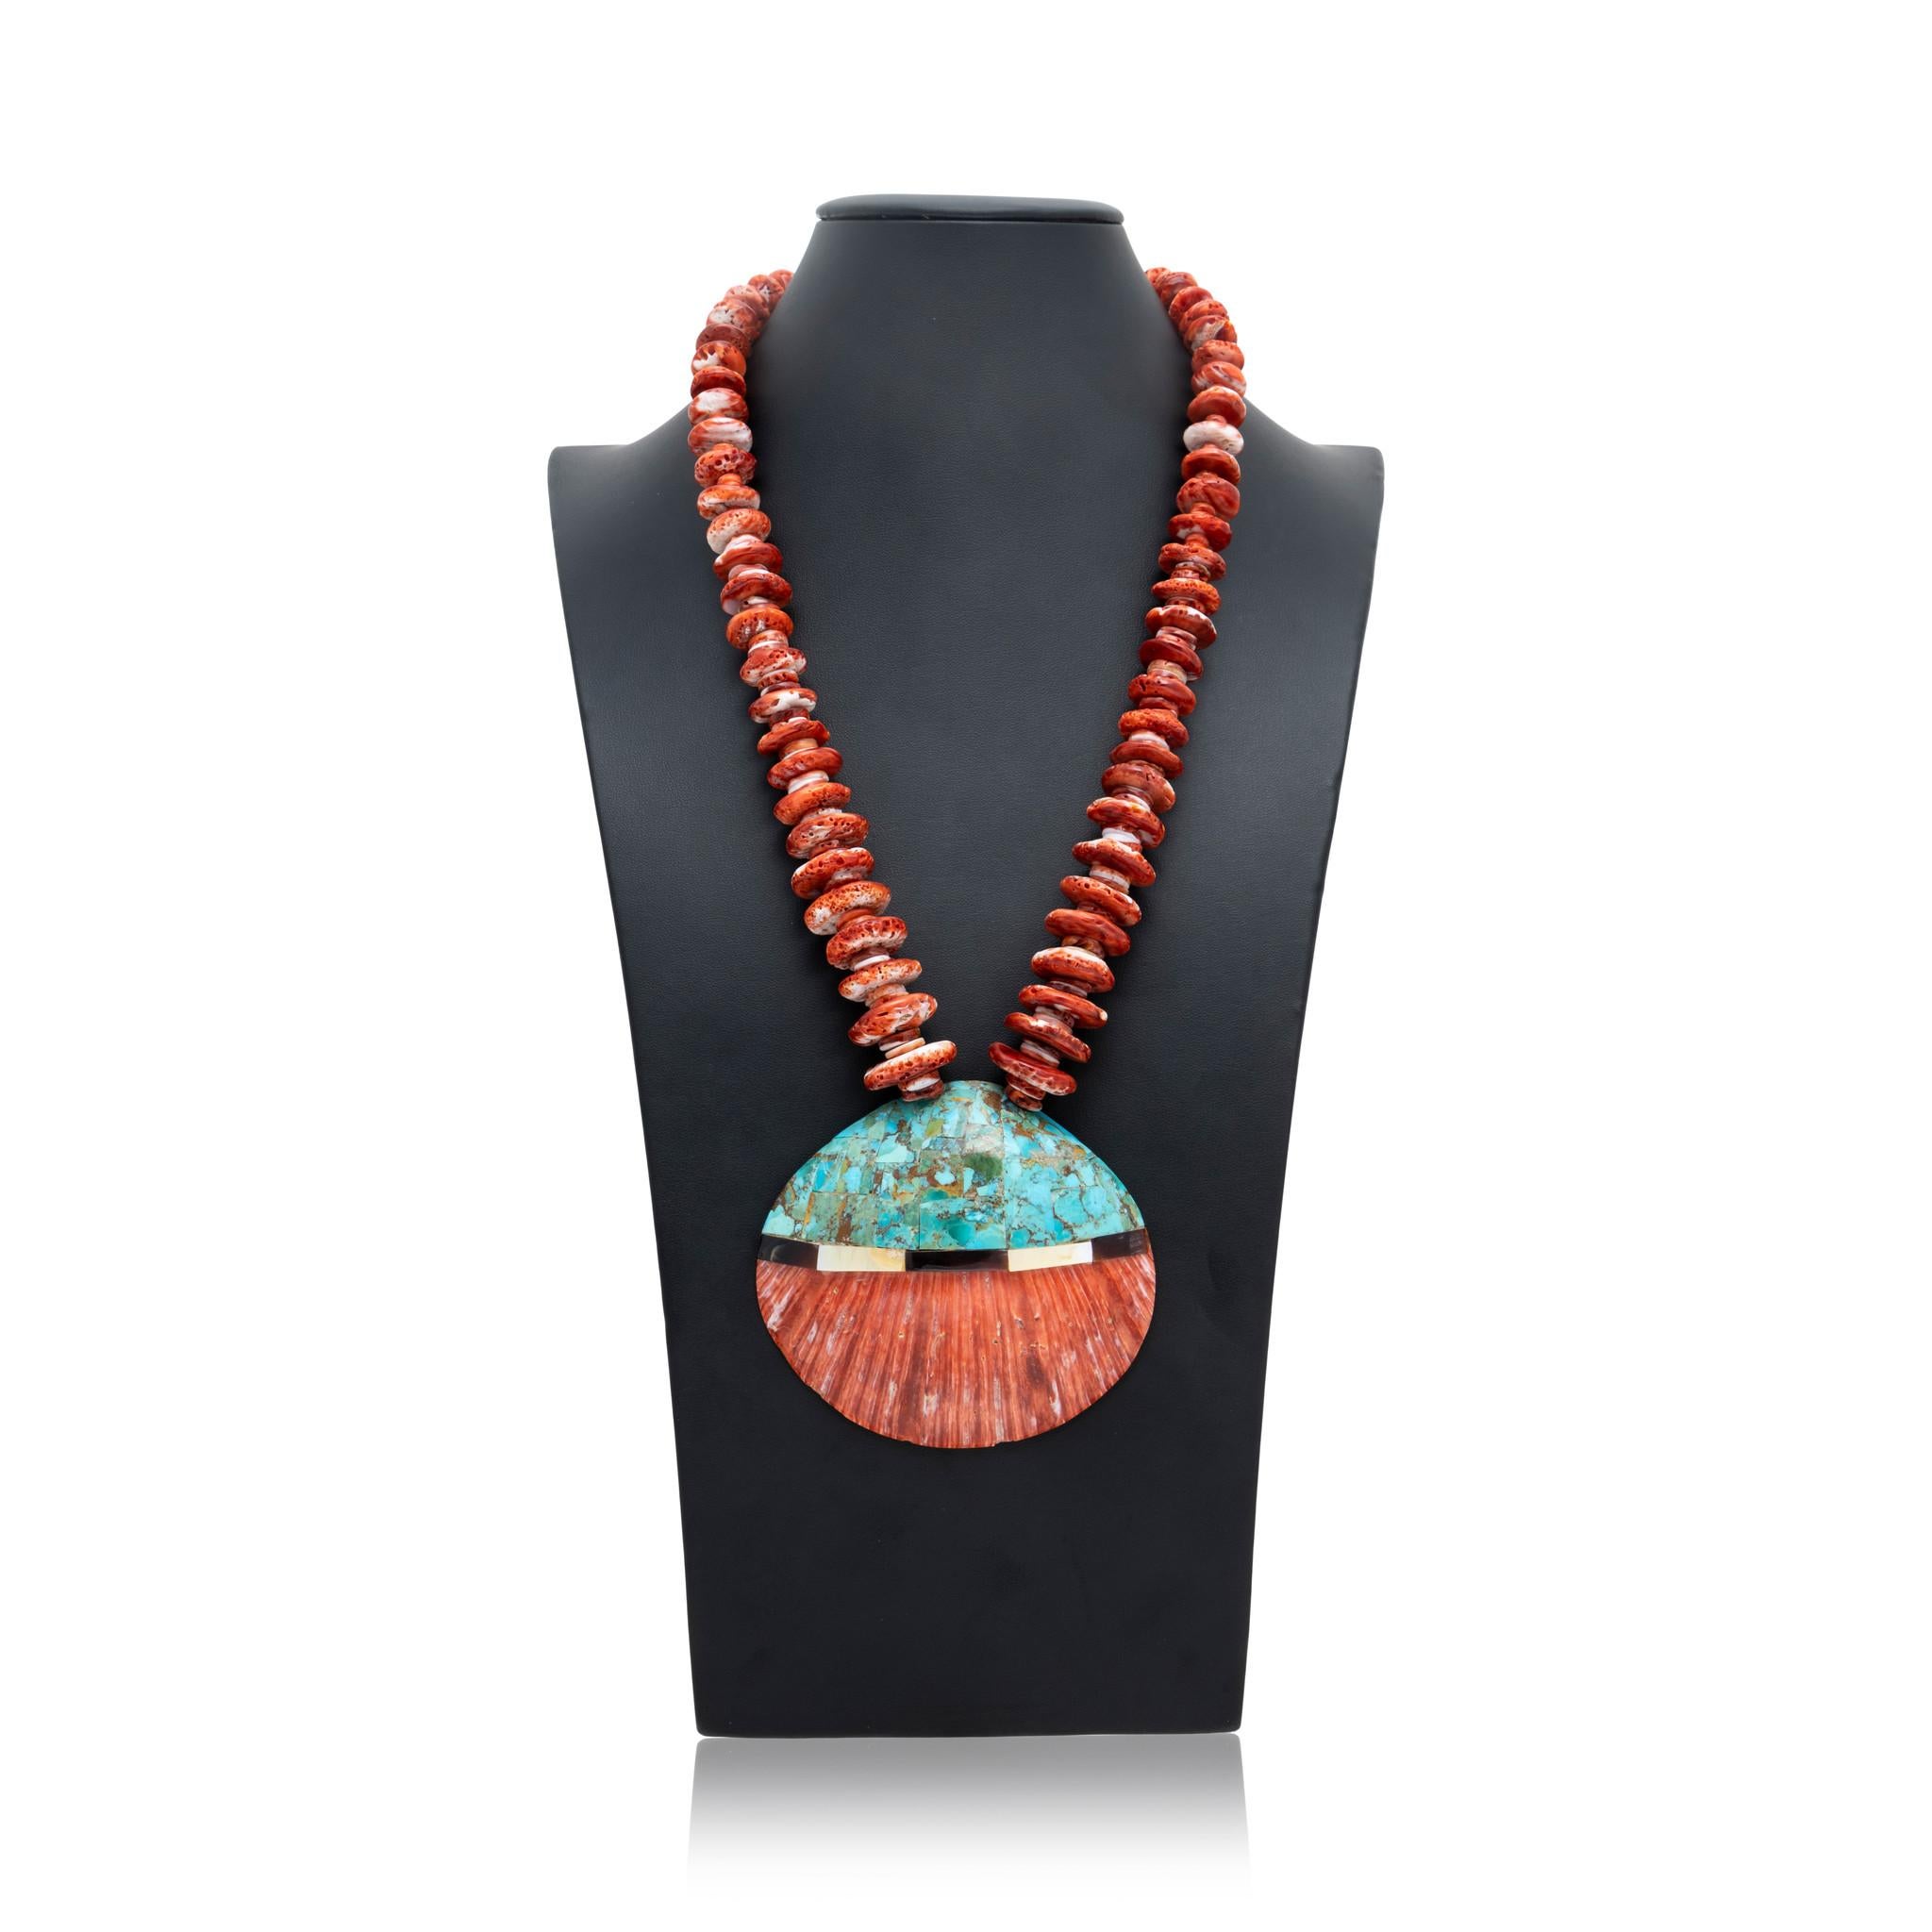 Santo Domingo Indianer Halskette mit orangefarbenen Stachelaustern. Das Stück hat eine Perlenkette mit großen und kleinen, runden, stacheligen Austernperlen und einen großen Muschelanhänger mit Kingman-Türkis, Perlmutt und Onyx als Intarsien.